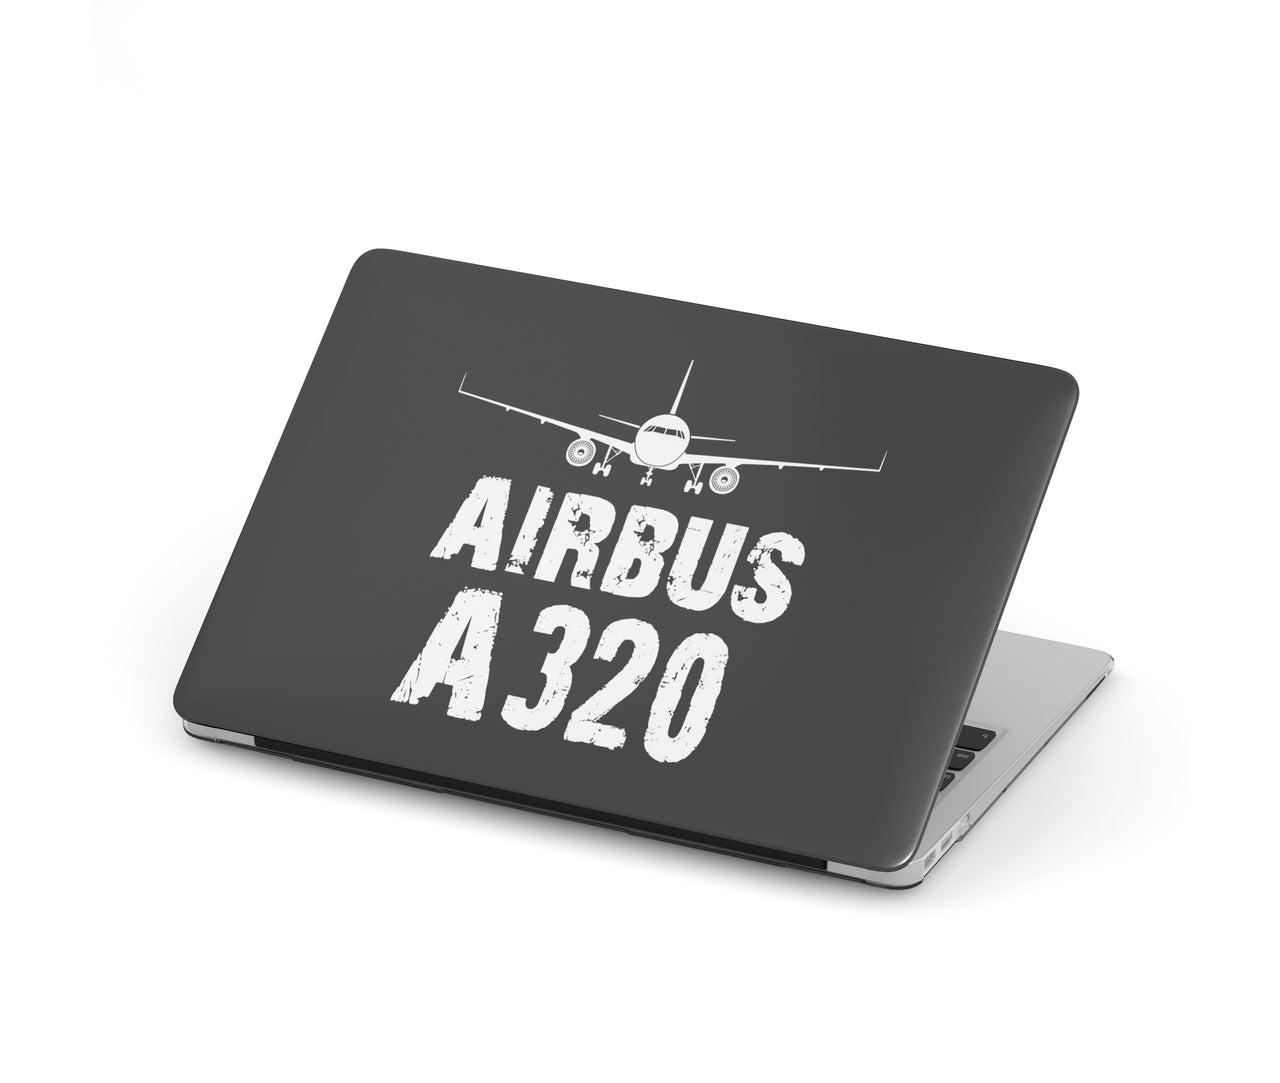 Airbus A320 & Plane Designed Macbook Cases